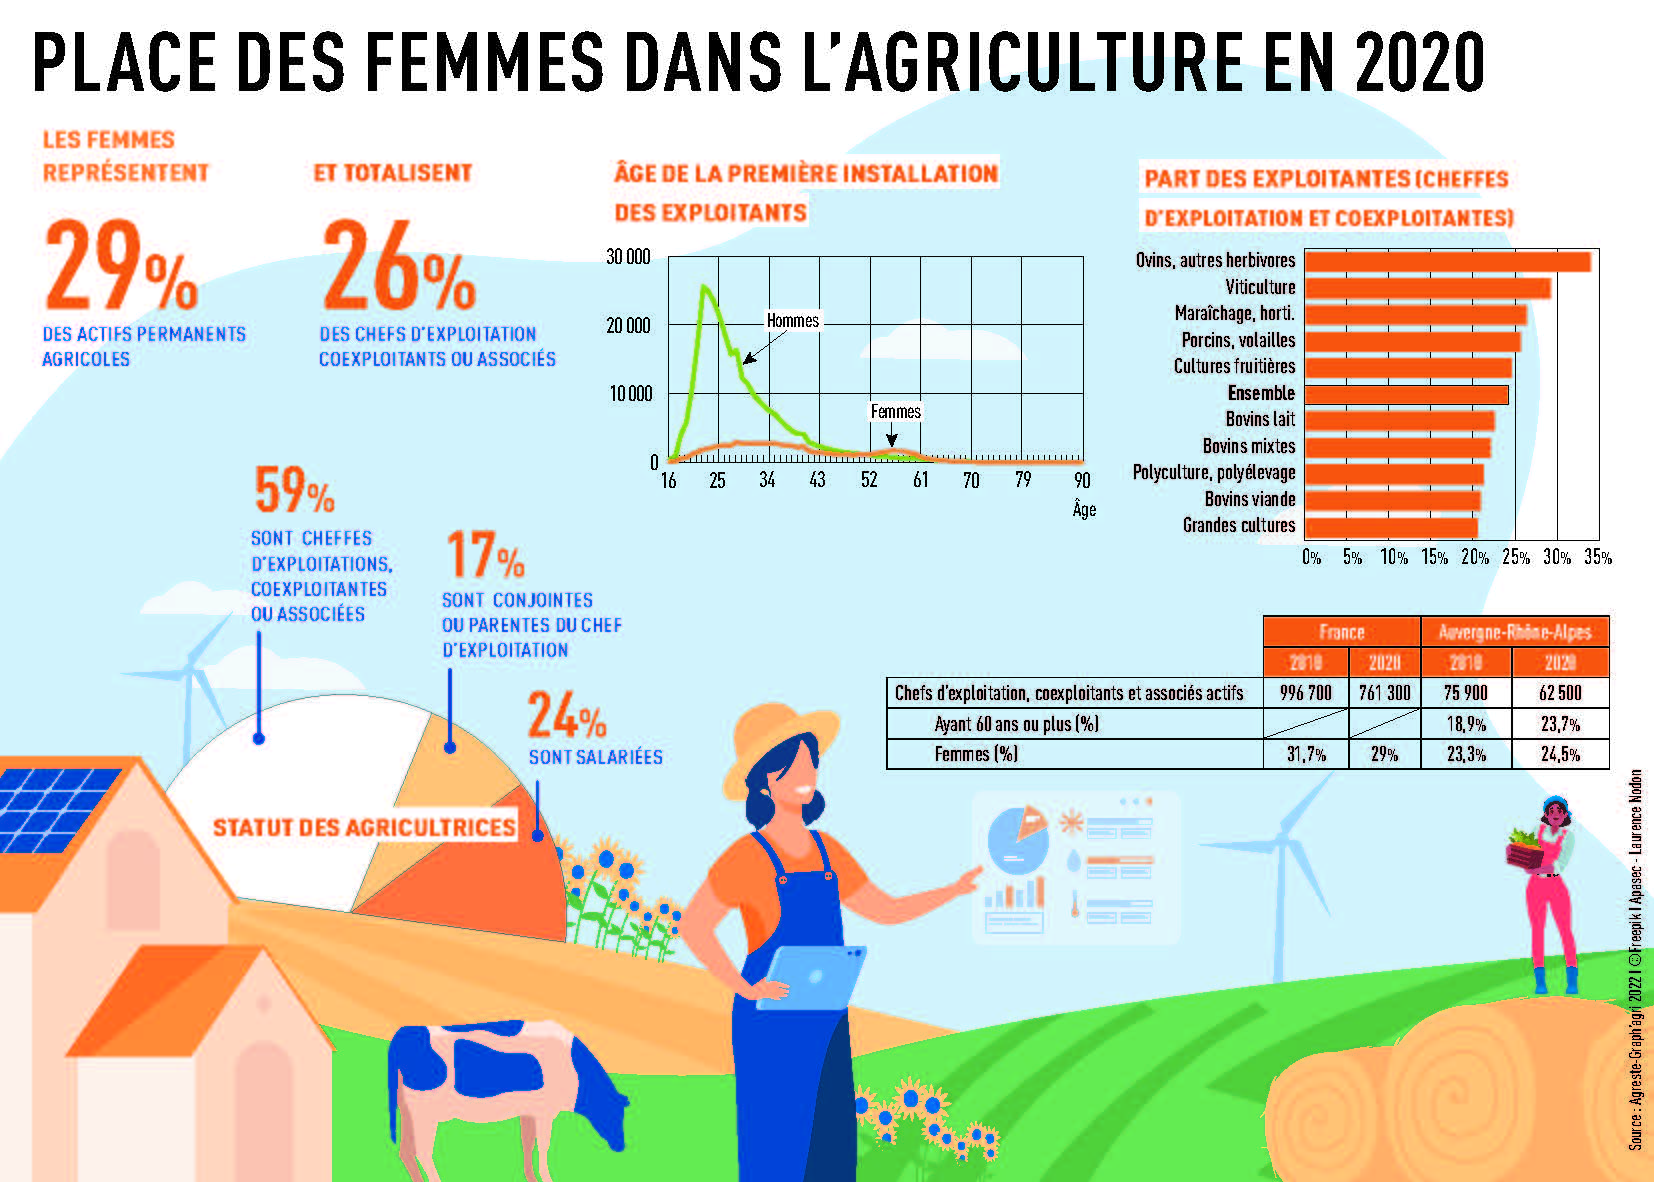 La place des femmes dans l'agriculture en 2020